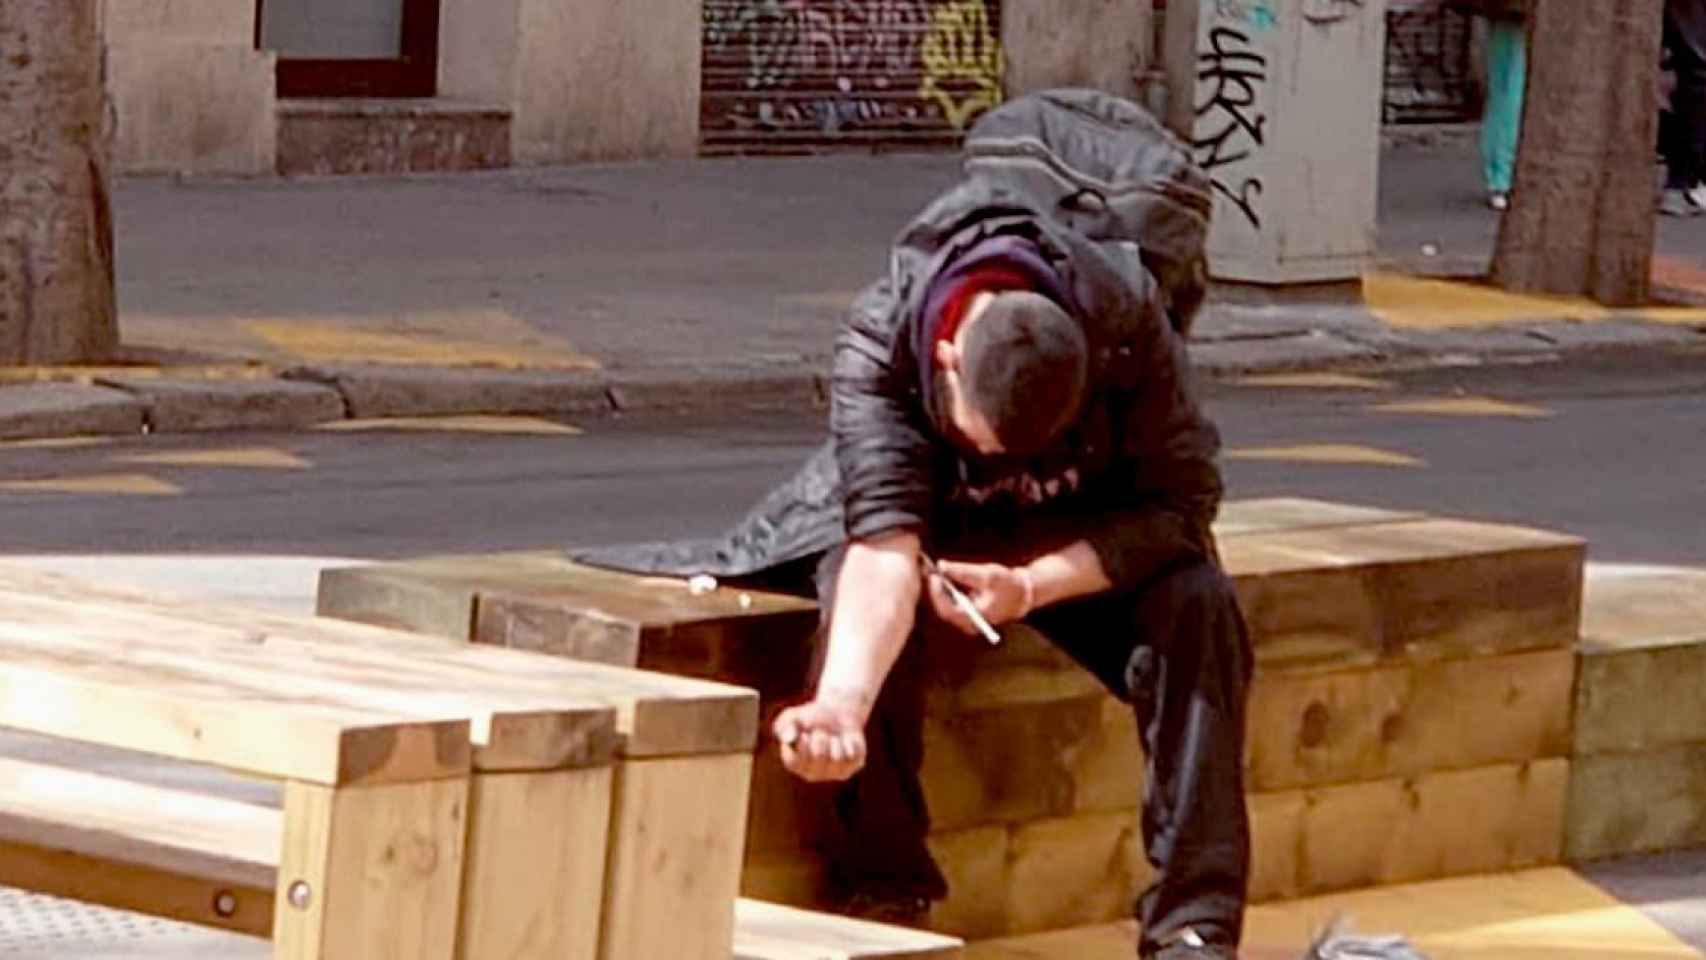 Un drogadicto pinchándose en una de las calles de Sant Antoni, Barcelona, en pleno día / CG